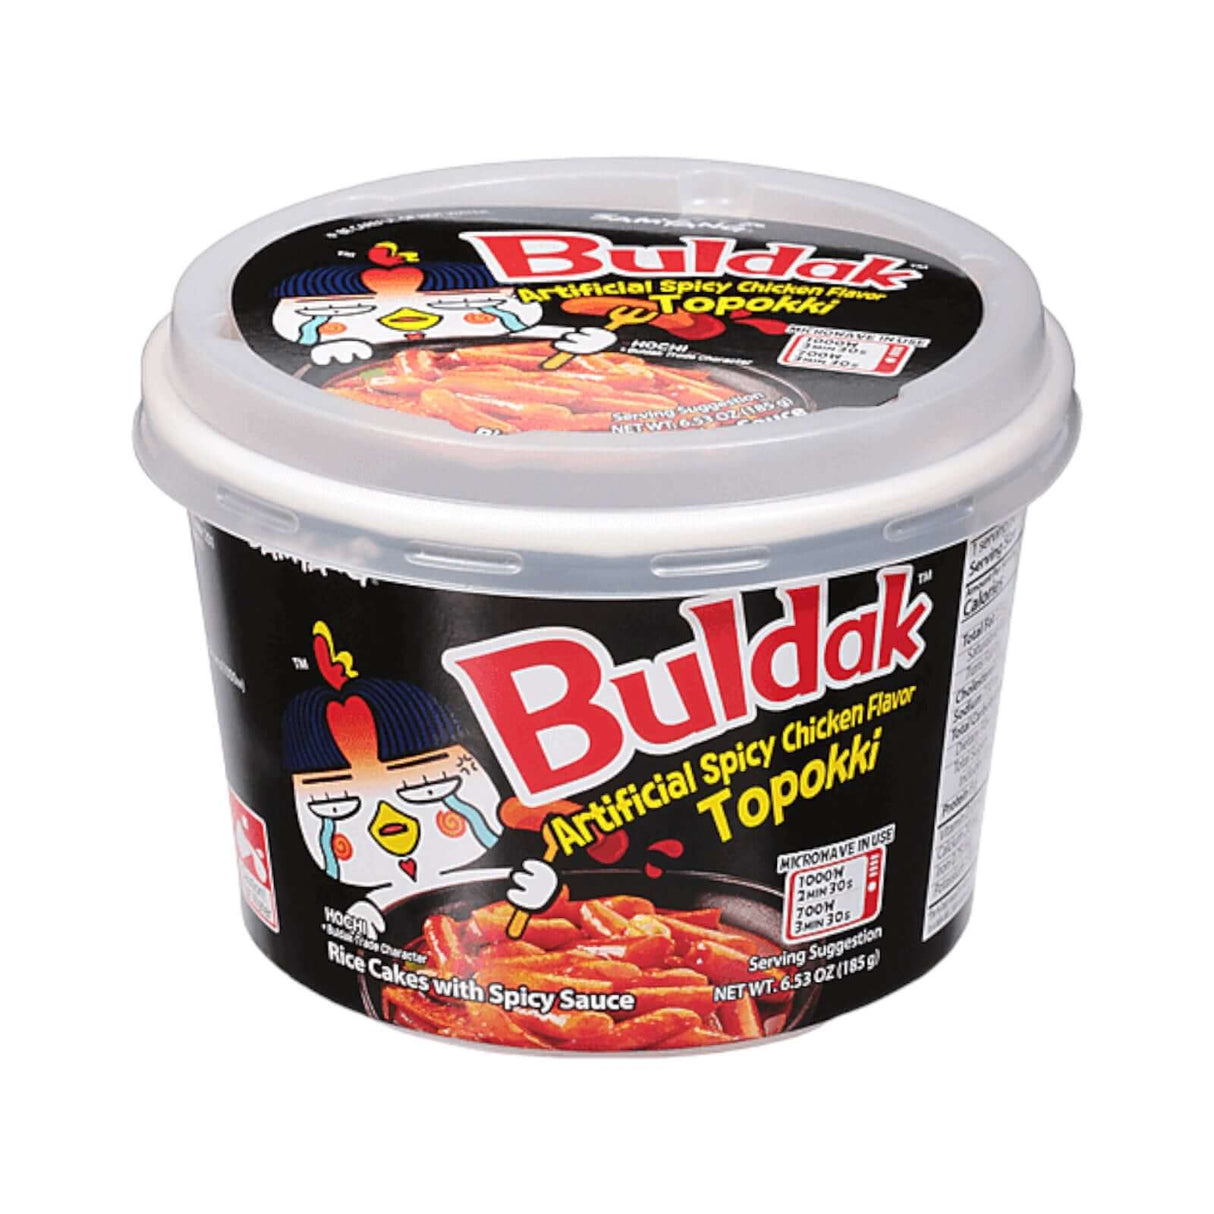 Samyang Buldak Artificial Spicy Chicken Flavor Topokki